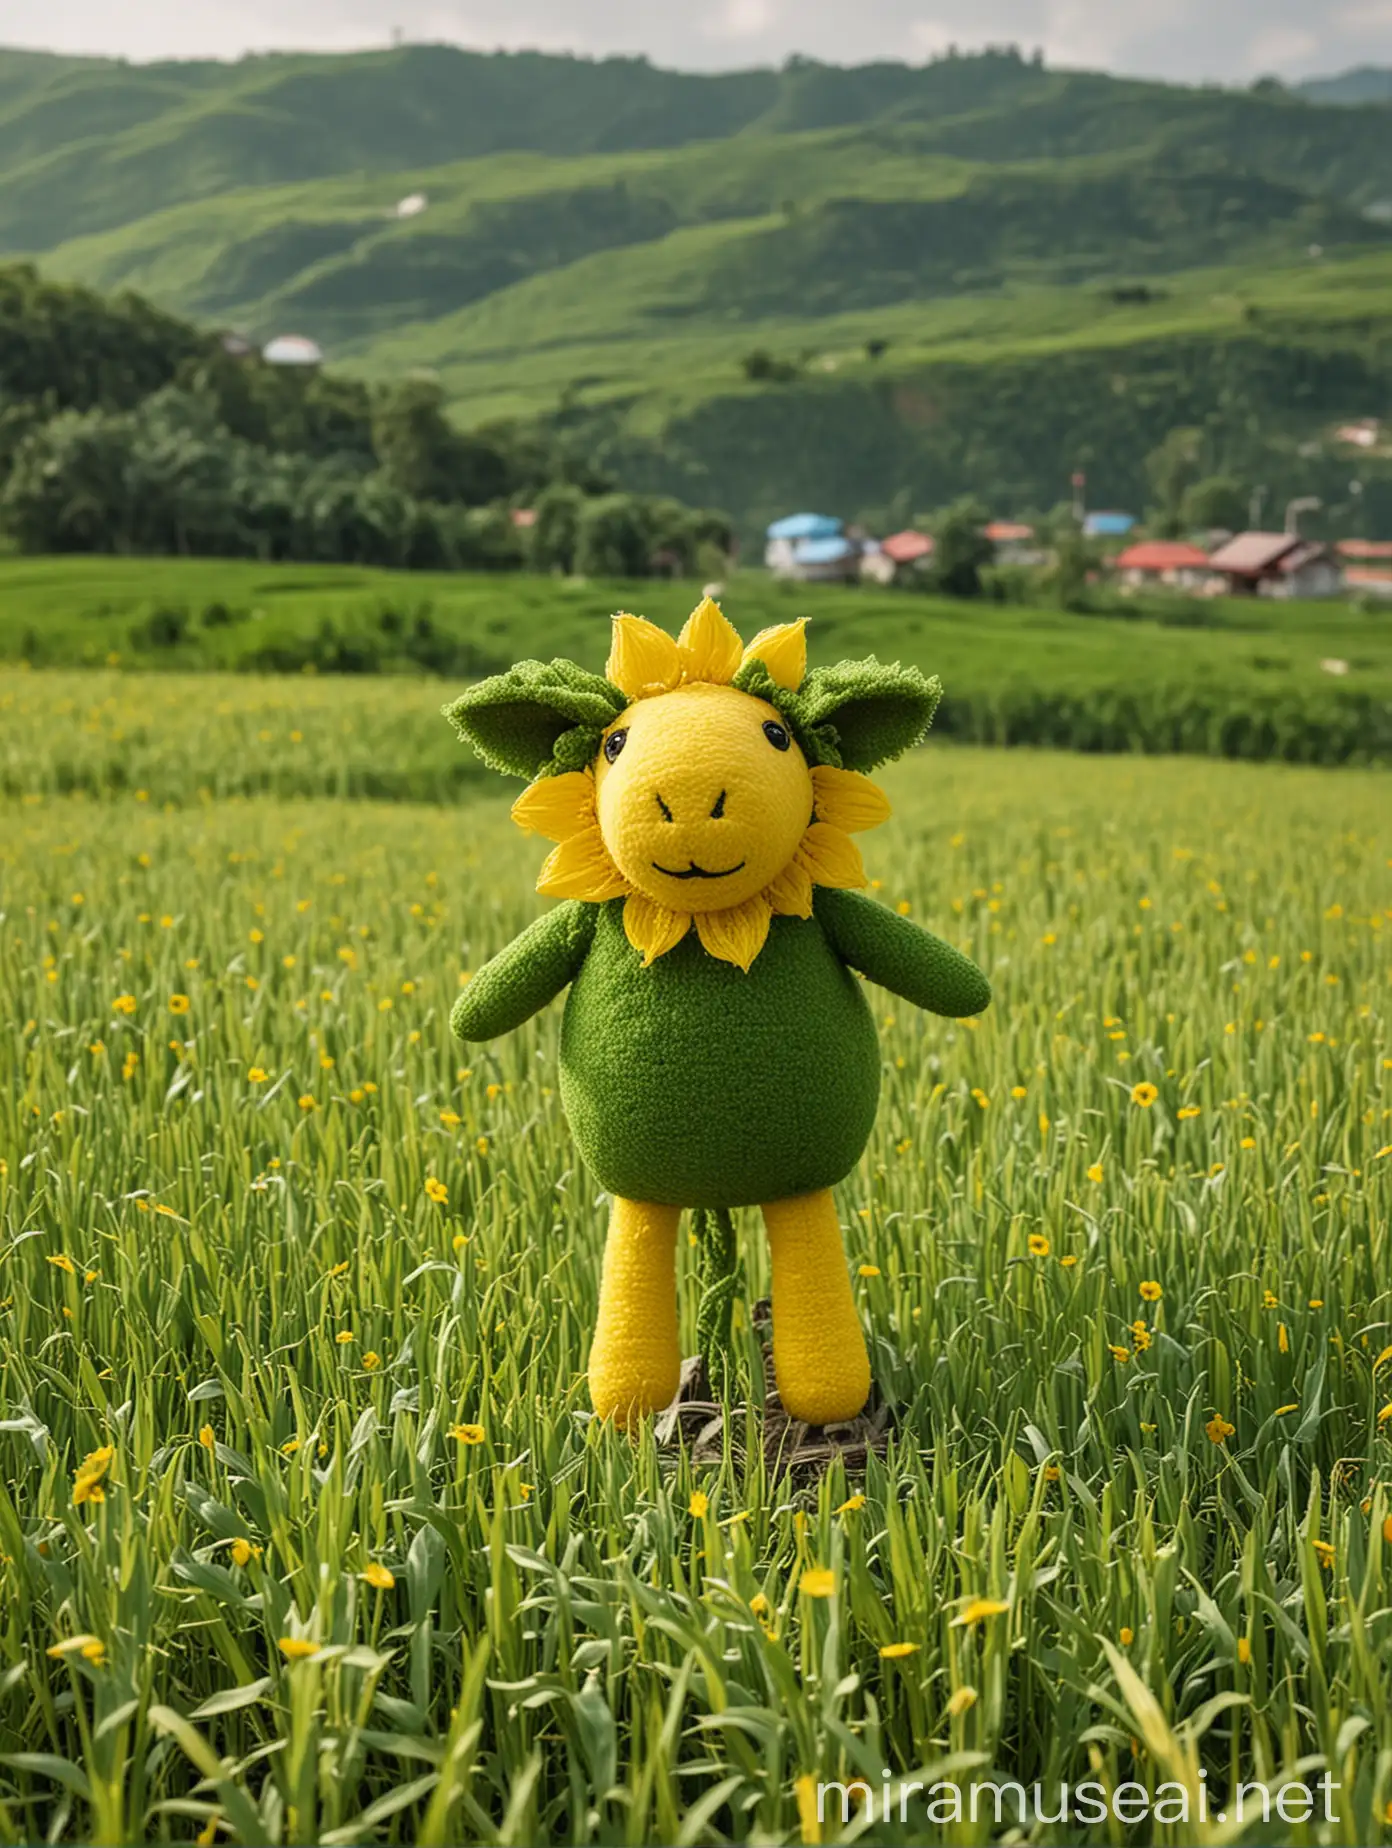 一只西兰花组成的绿色绵羊站在金黄的稻田旁